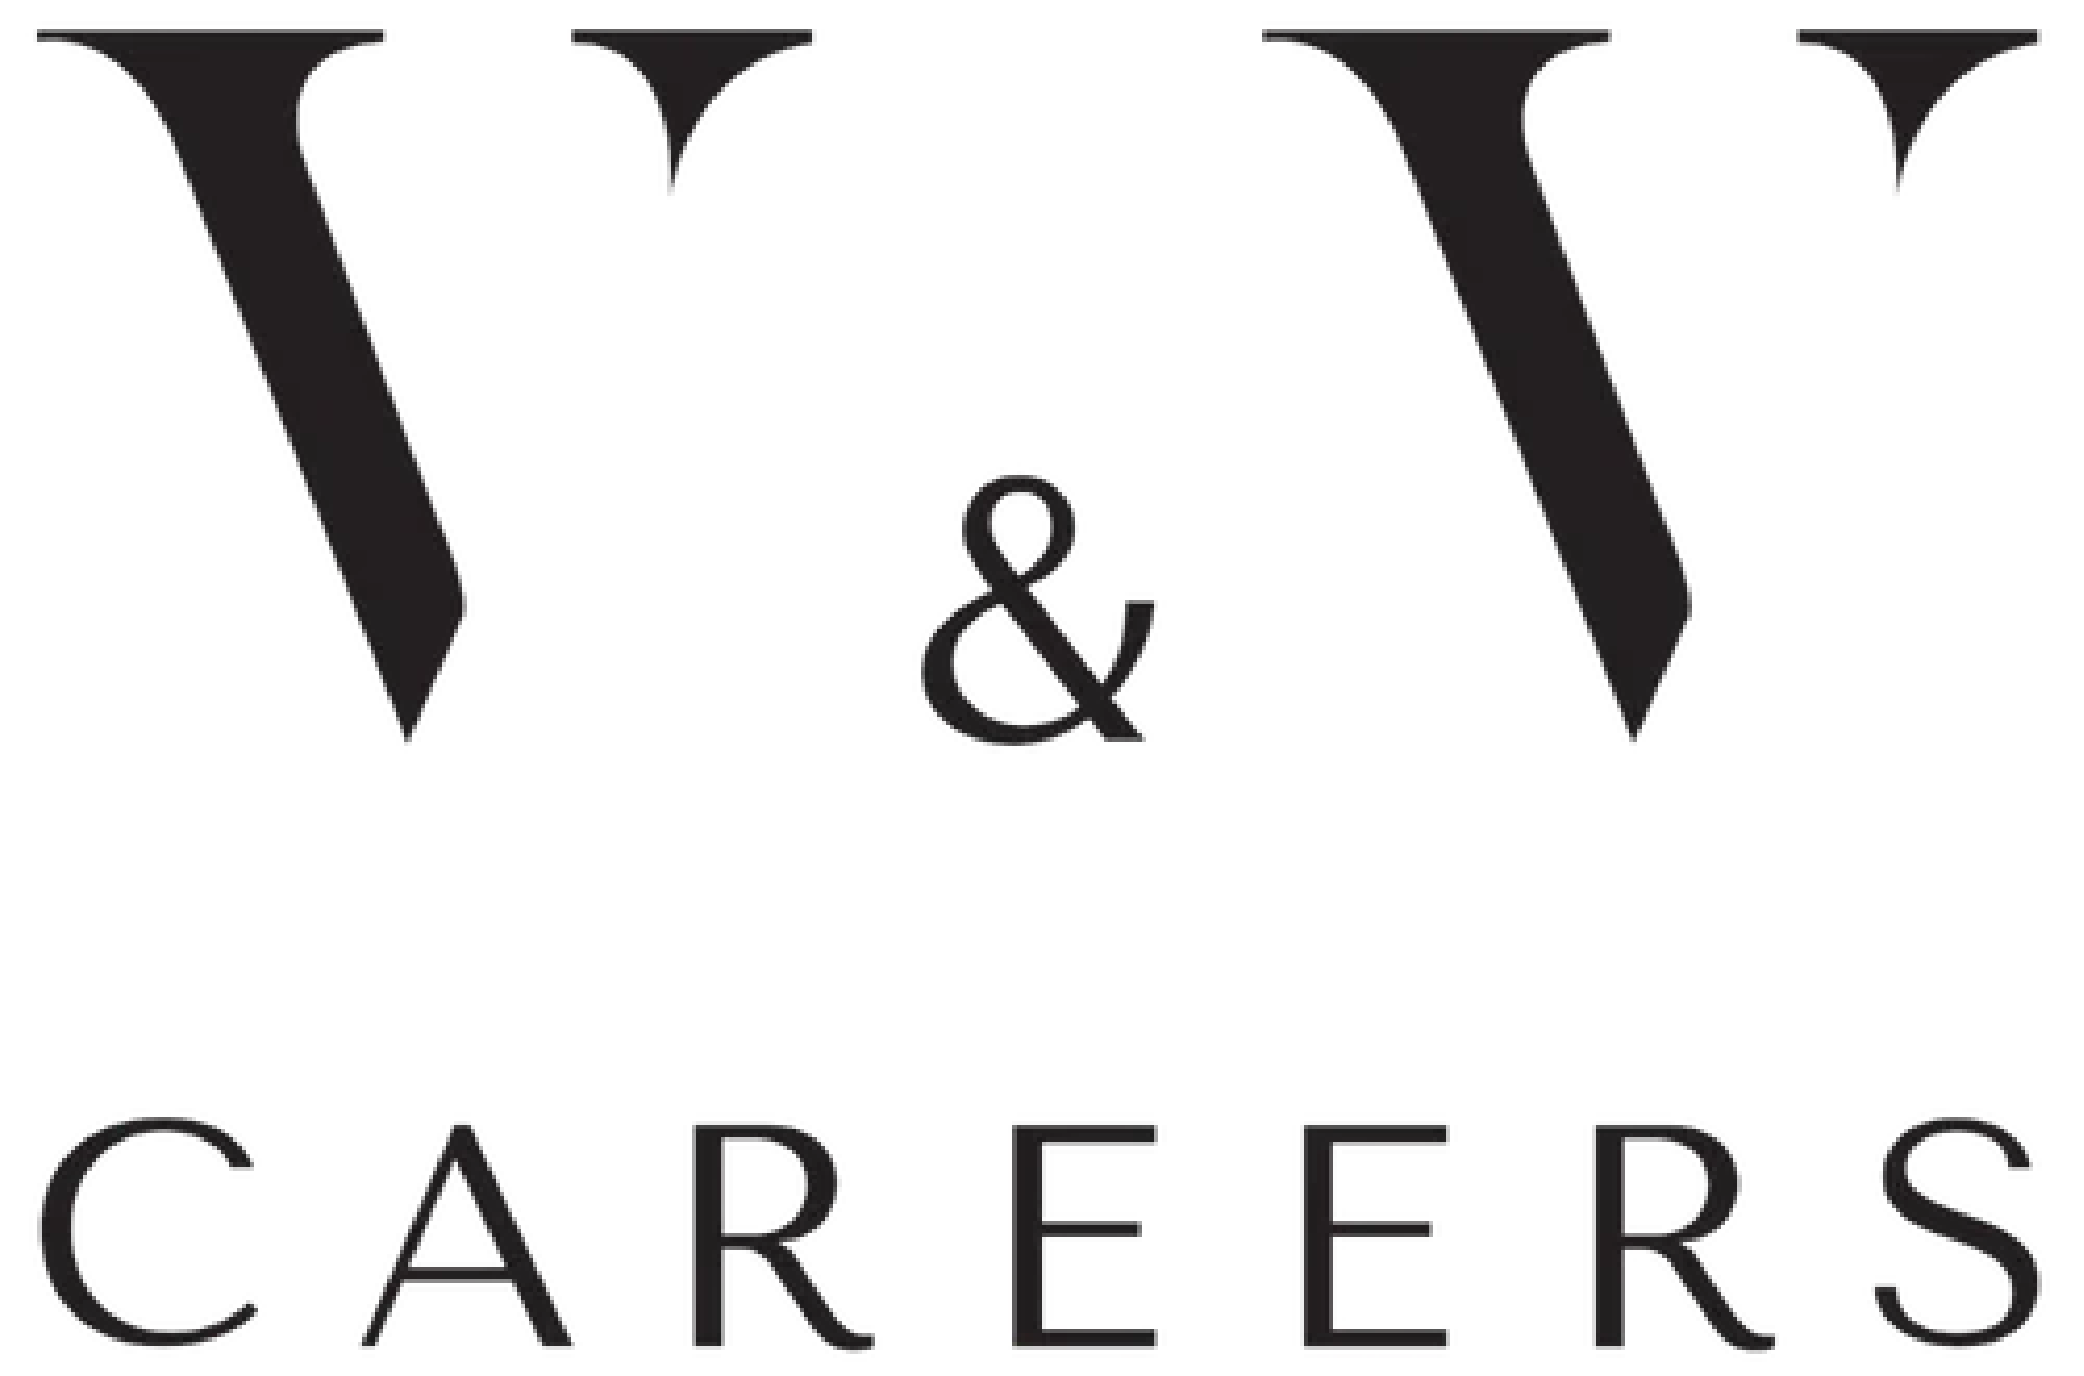 V&V Careers